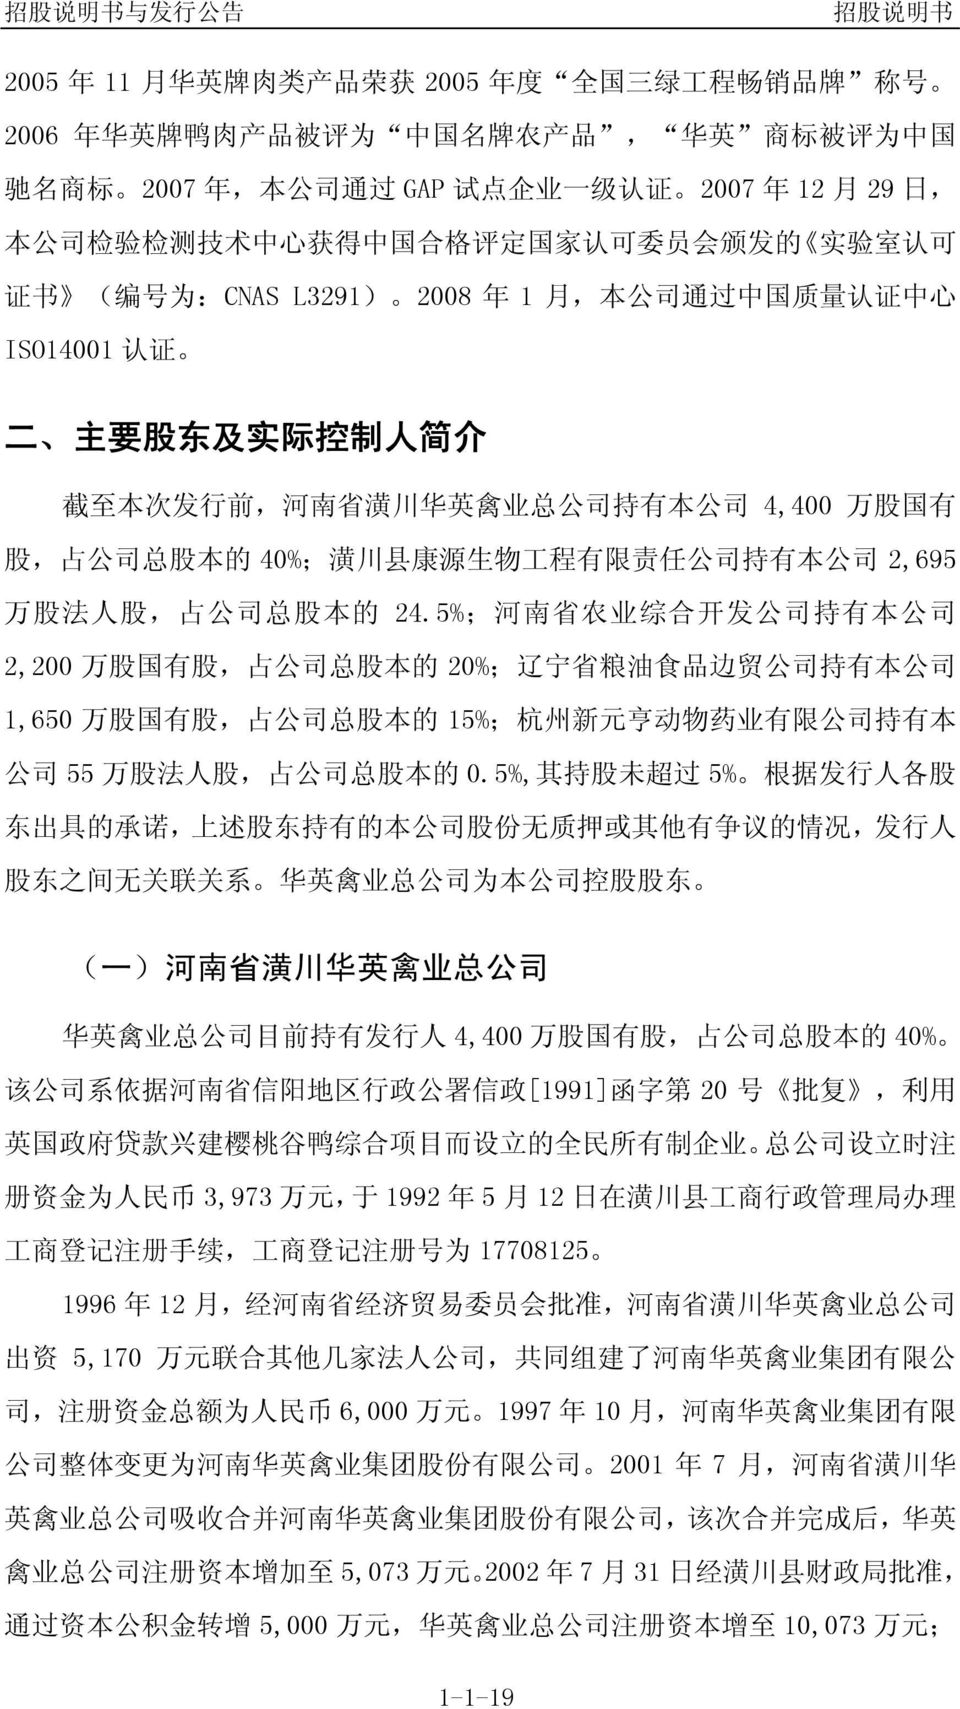 有 本 公 司 4,400 万 股 国 有 股, 占 公 司 总 股 本 的 40%; 潢 川 县 康 源 生 物 工 程 有 限 责 任 公 司 持 有 本 公 司 2,695 万 股 法 人 股, 占 公 司 总 股 本 的 24.